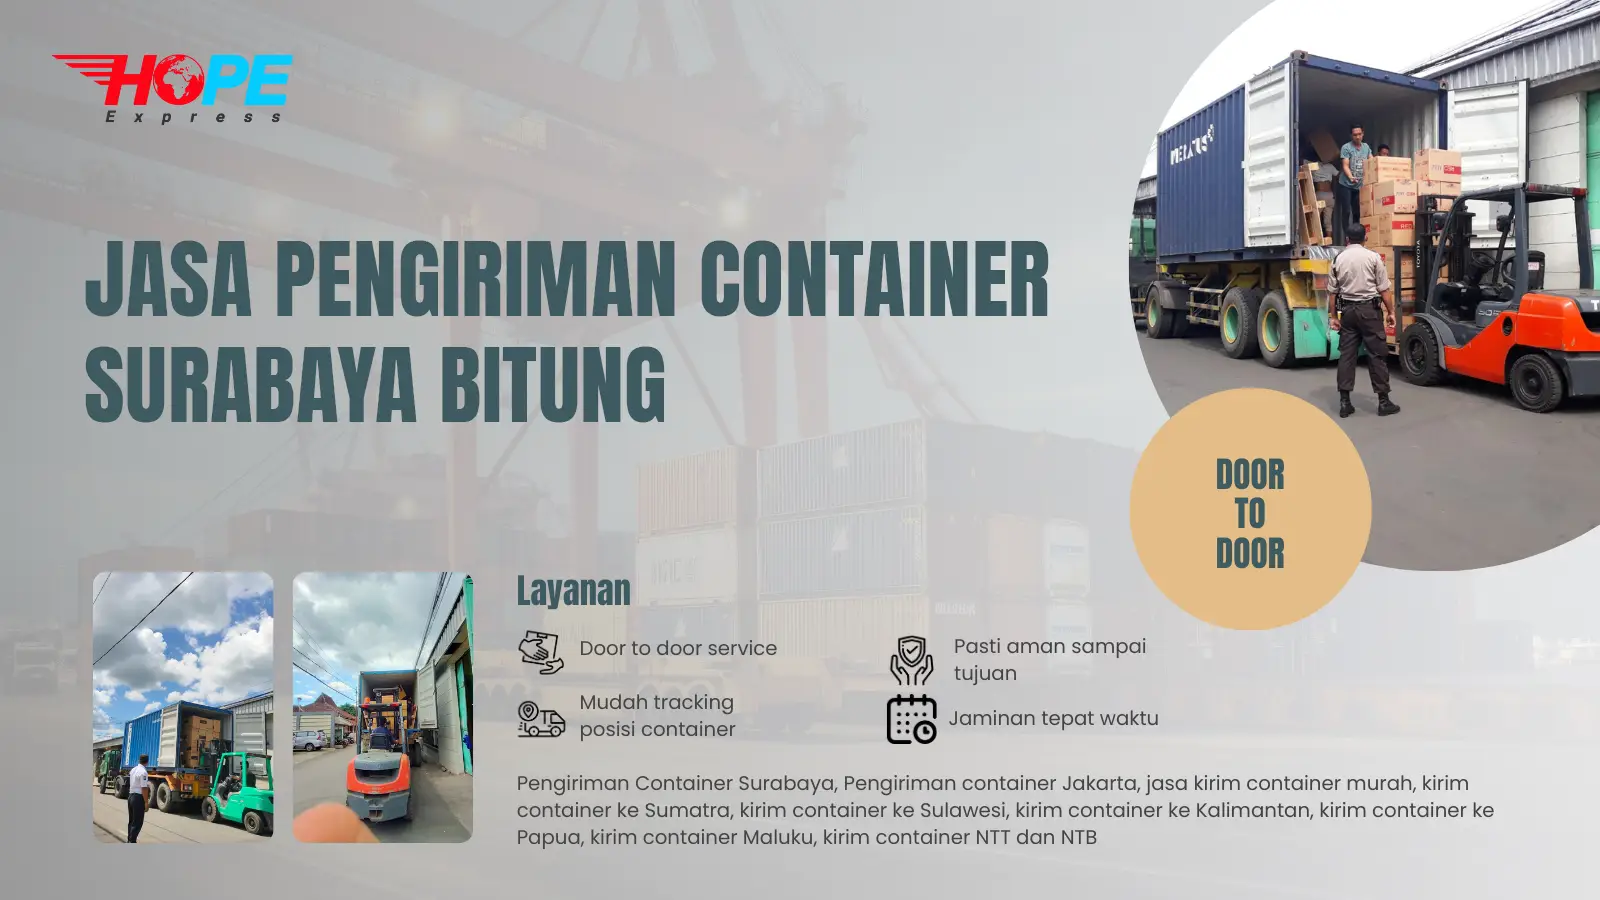 Jasa Pengiriman Container Surabaya Bitung